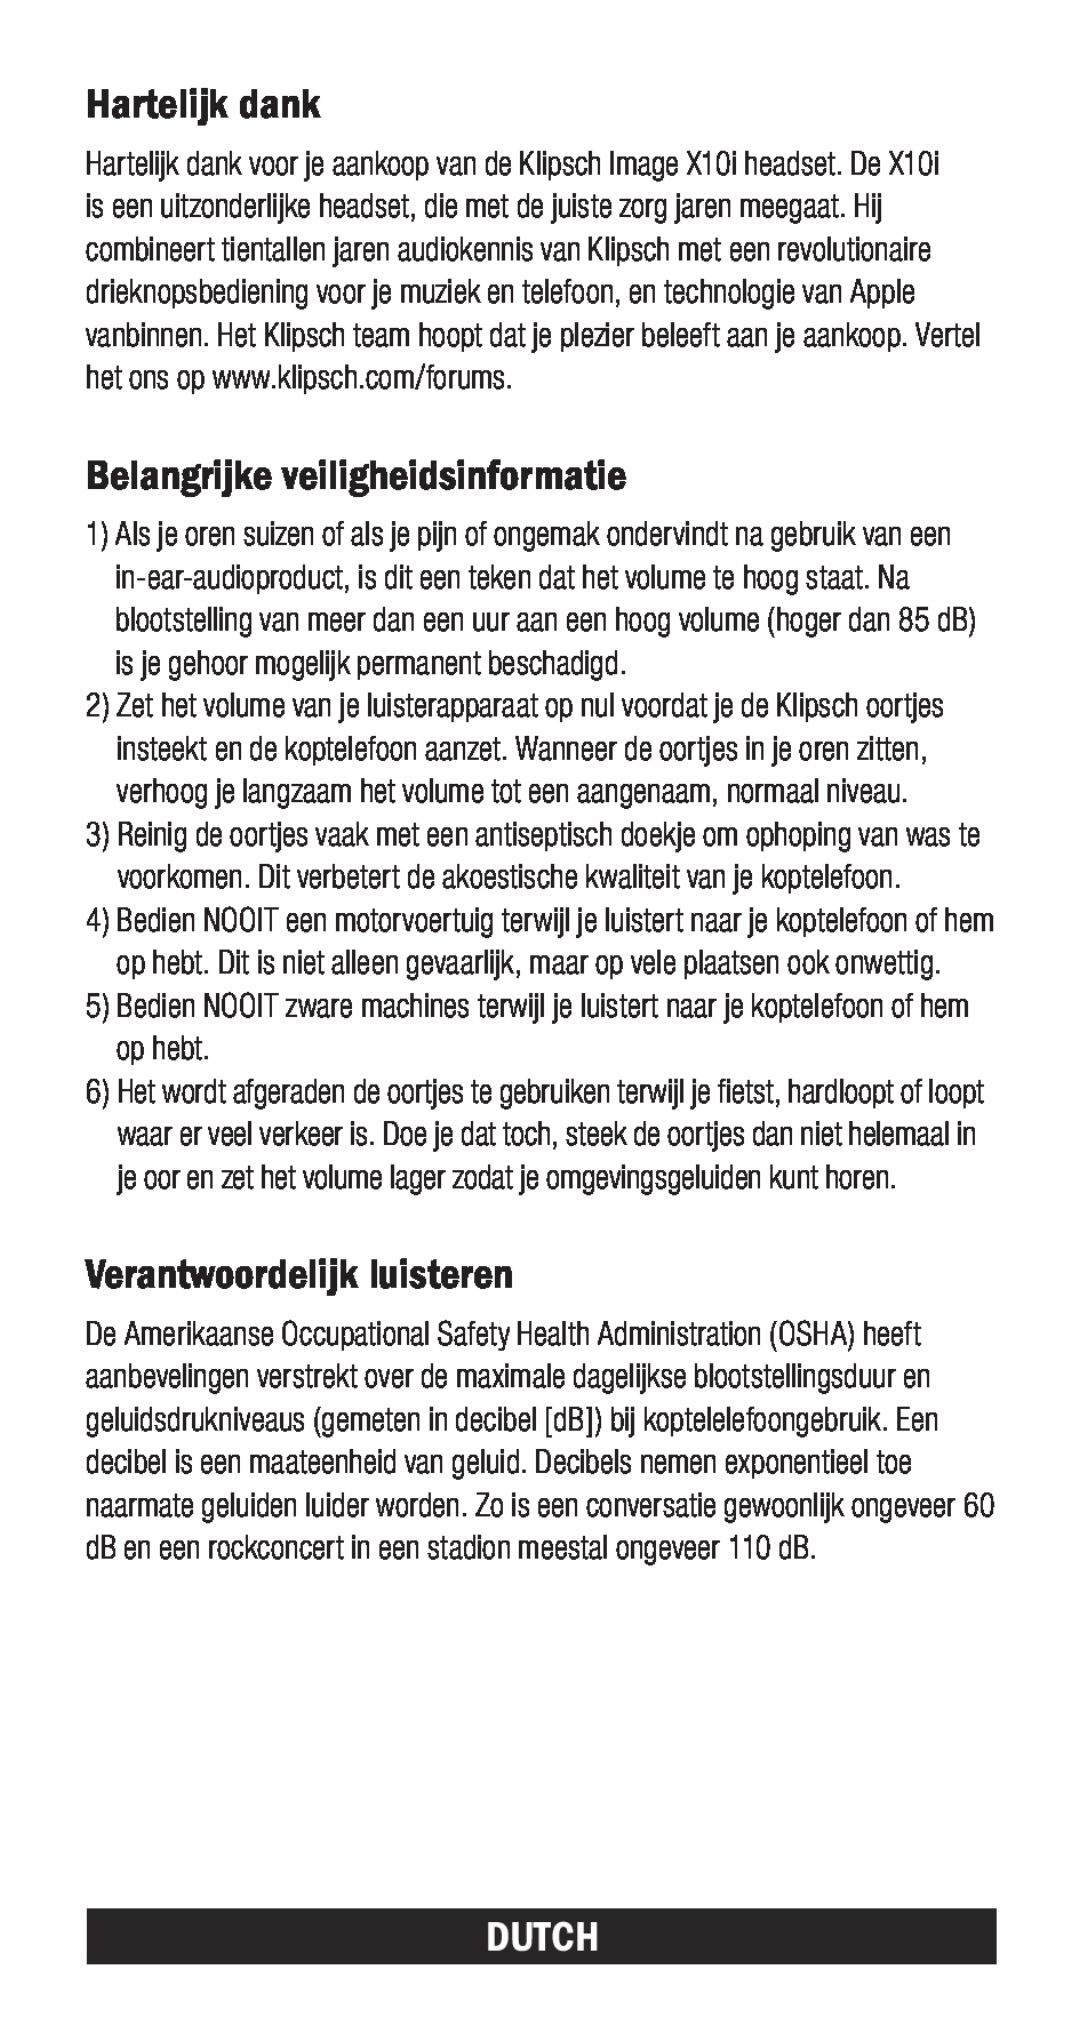 Klipsch X10I owner manual Hartelijk dank, Belangrijke veiligheidsinformatie, Verantwoordelijk luisteren, Dutch 